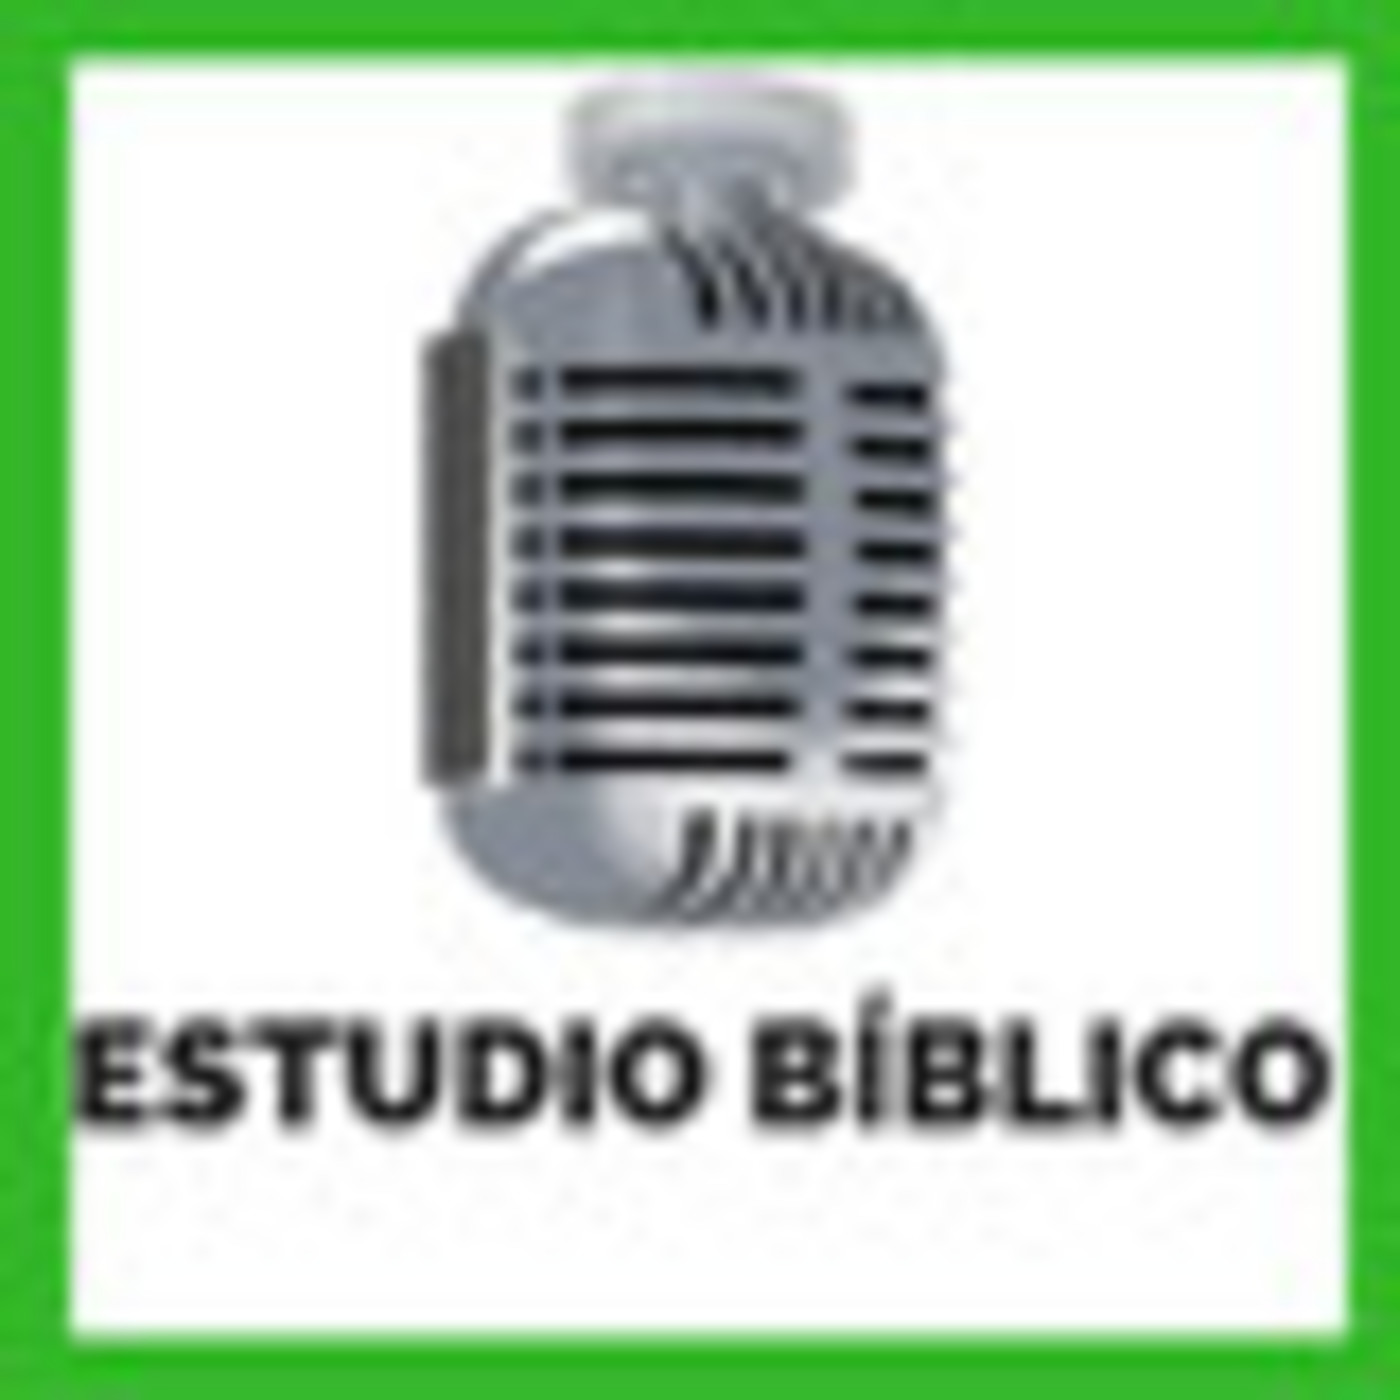 2019-08-30 | Estudio Bíblico | SERVIR A LOS NECESITADOS - PARA ESTUDIAR Y MEDITAR